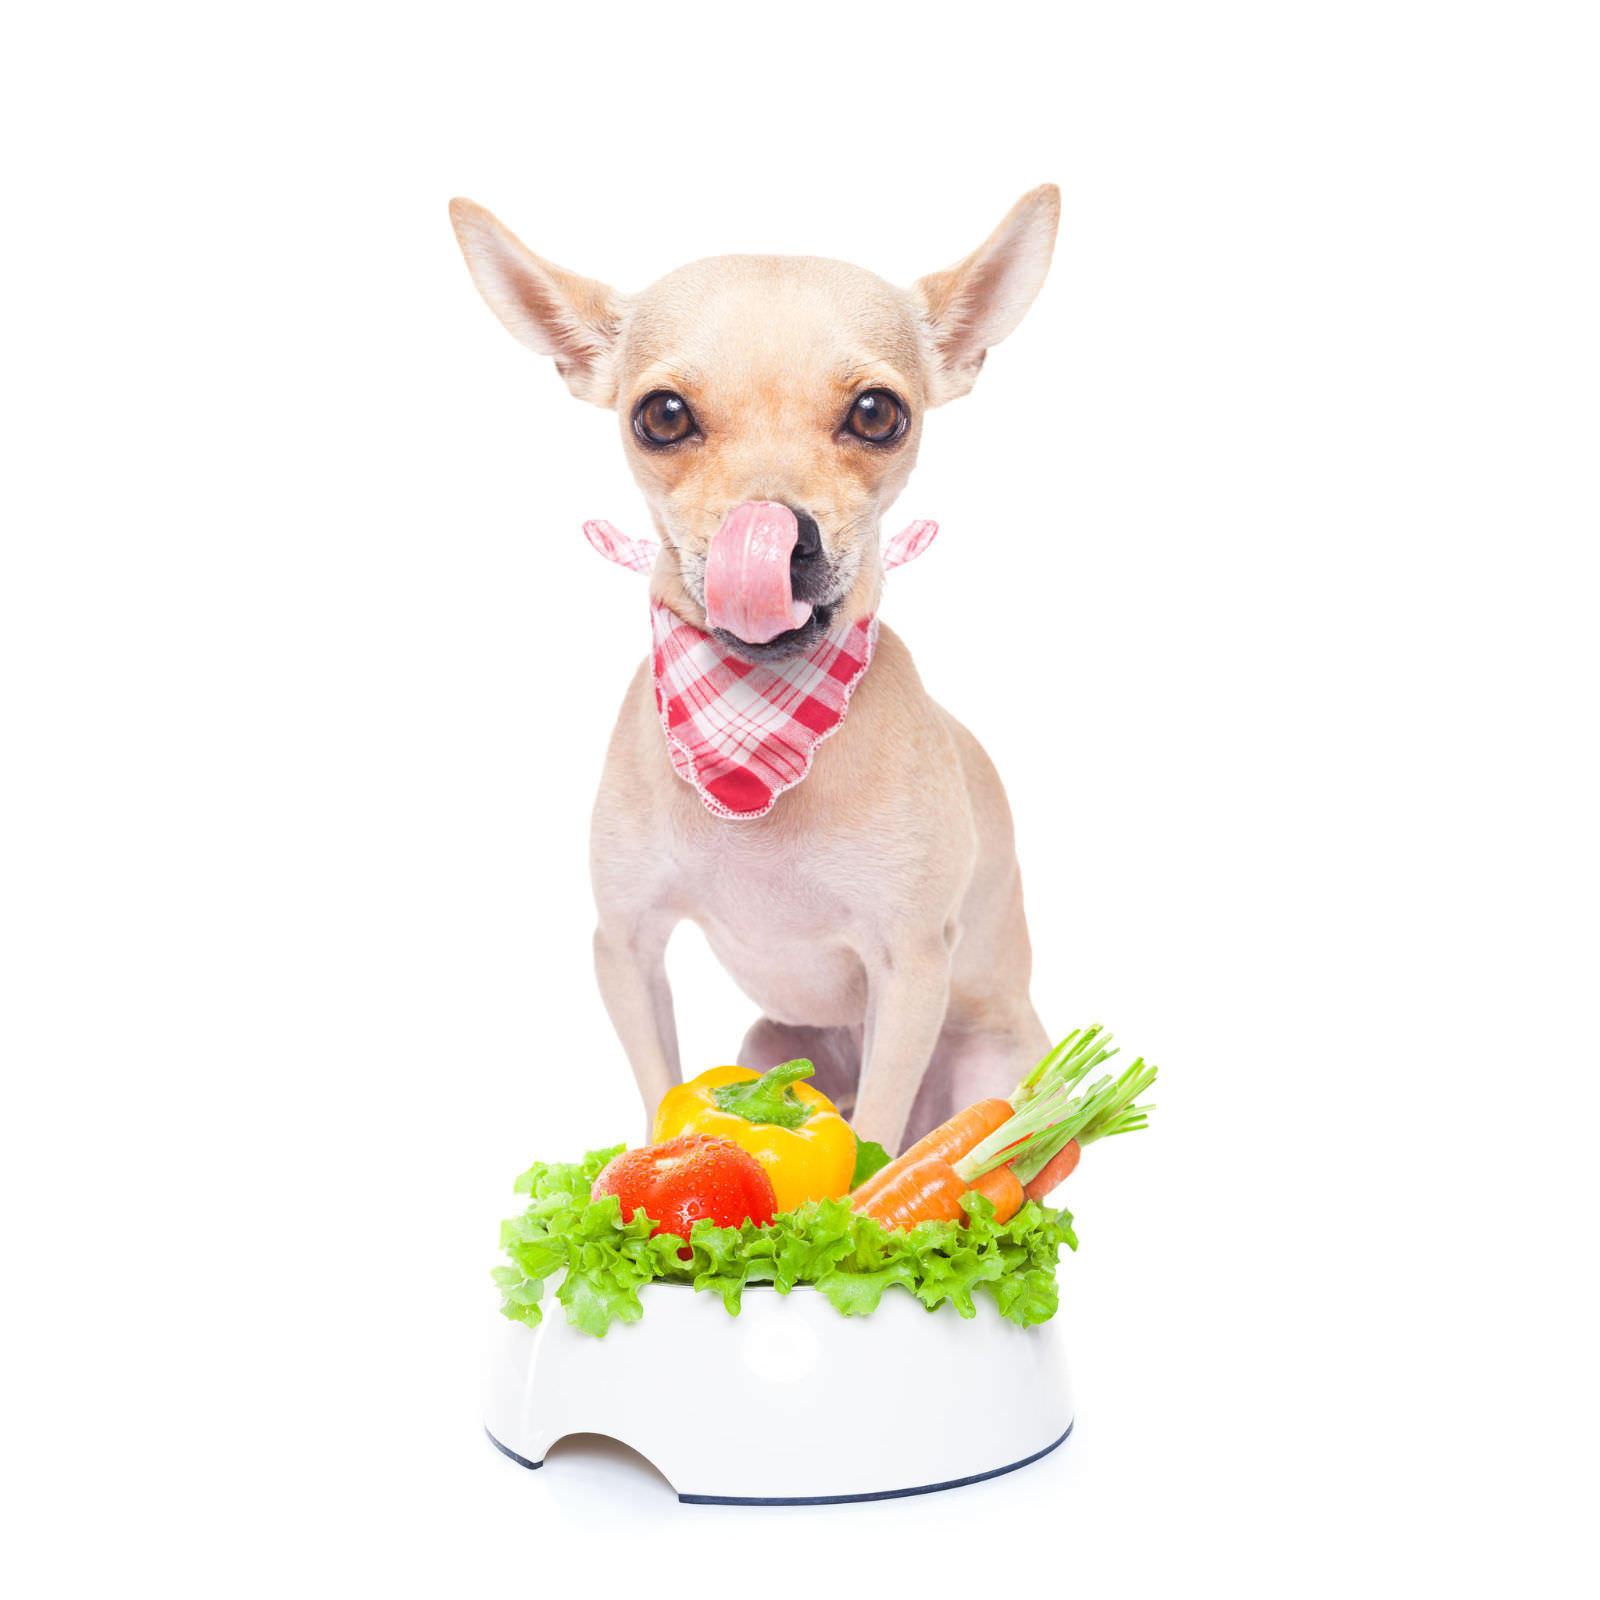 dieta a base di verdure per cani